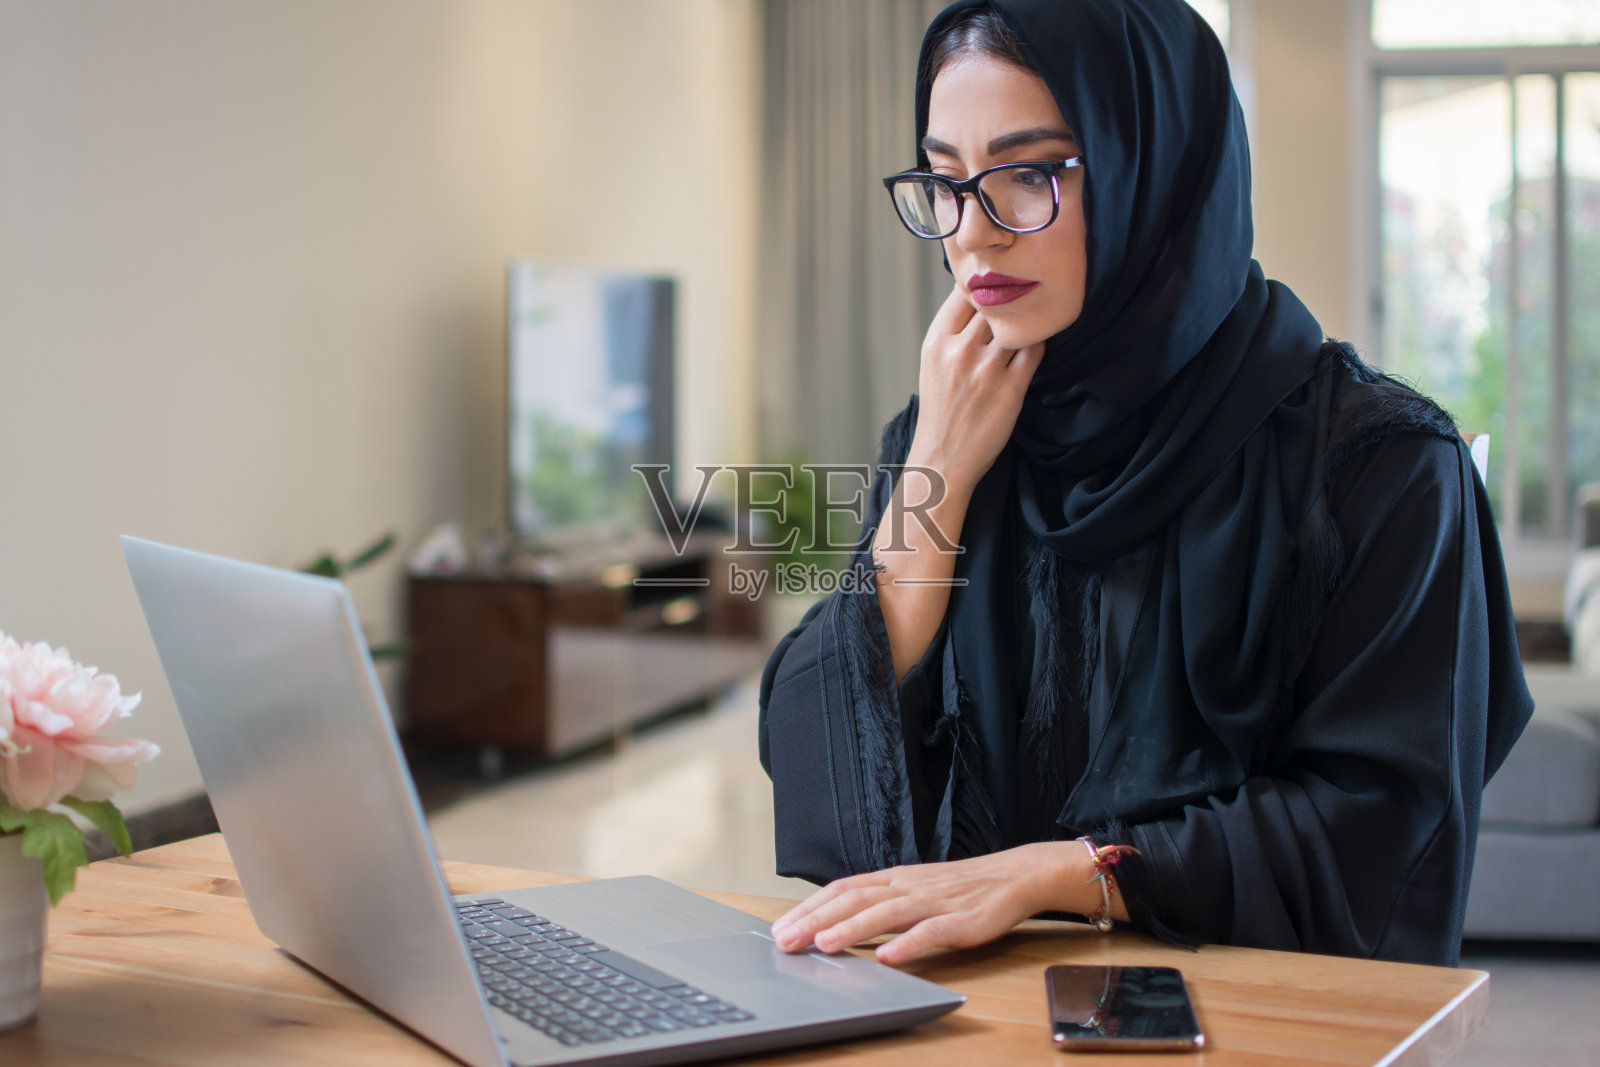 沉思或担忧的阿拉伯妇女在家里使用笔记本电脑照片摄影图片